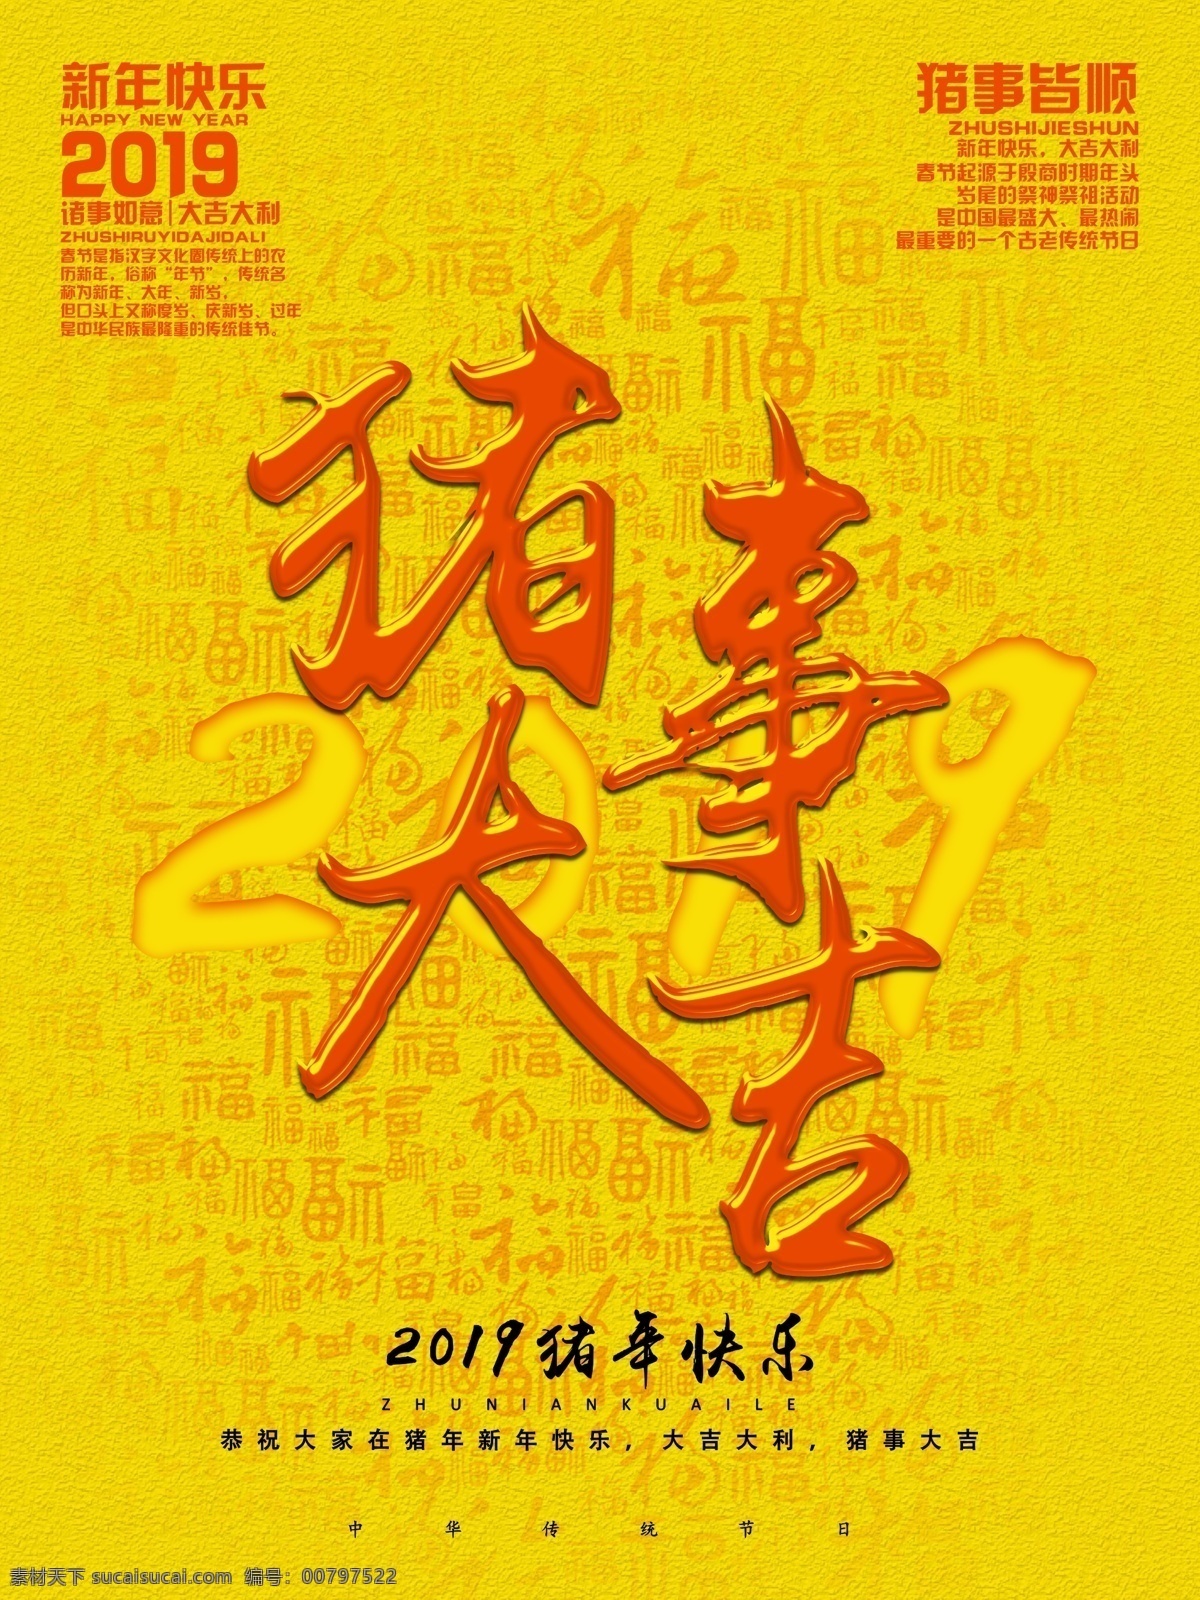 喜庆 创意 字体 排版 猪年 促销 海报 创意字体 排版设计 吉祥 新年快乐 2019 大吉大利